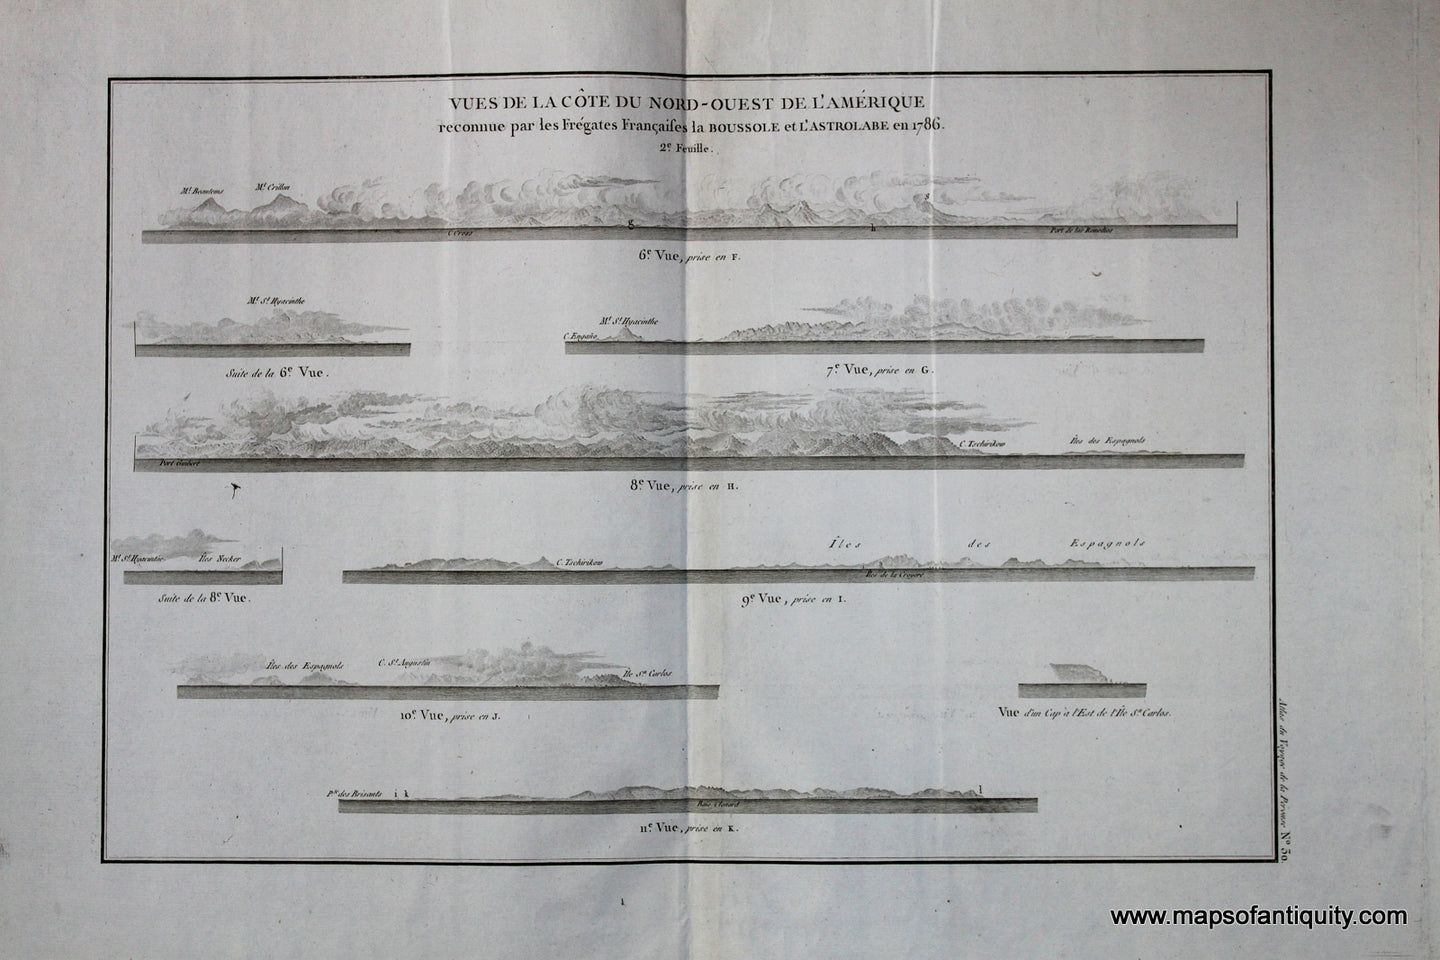 Antique-Black-and-White-Engraved-Recognition-Profiles-Vue-de-la-Cote-du-Nord-Ouest-de-L'Amerique-No.-30-West-General-Antique-Nautical-Charts-1798-Atlas-du-Voyage-de-la-Perouse-Maps-Of-Antiquity